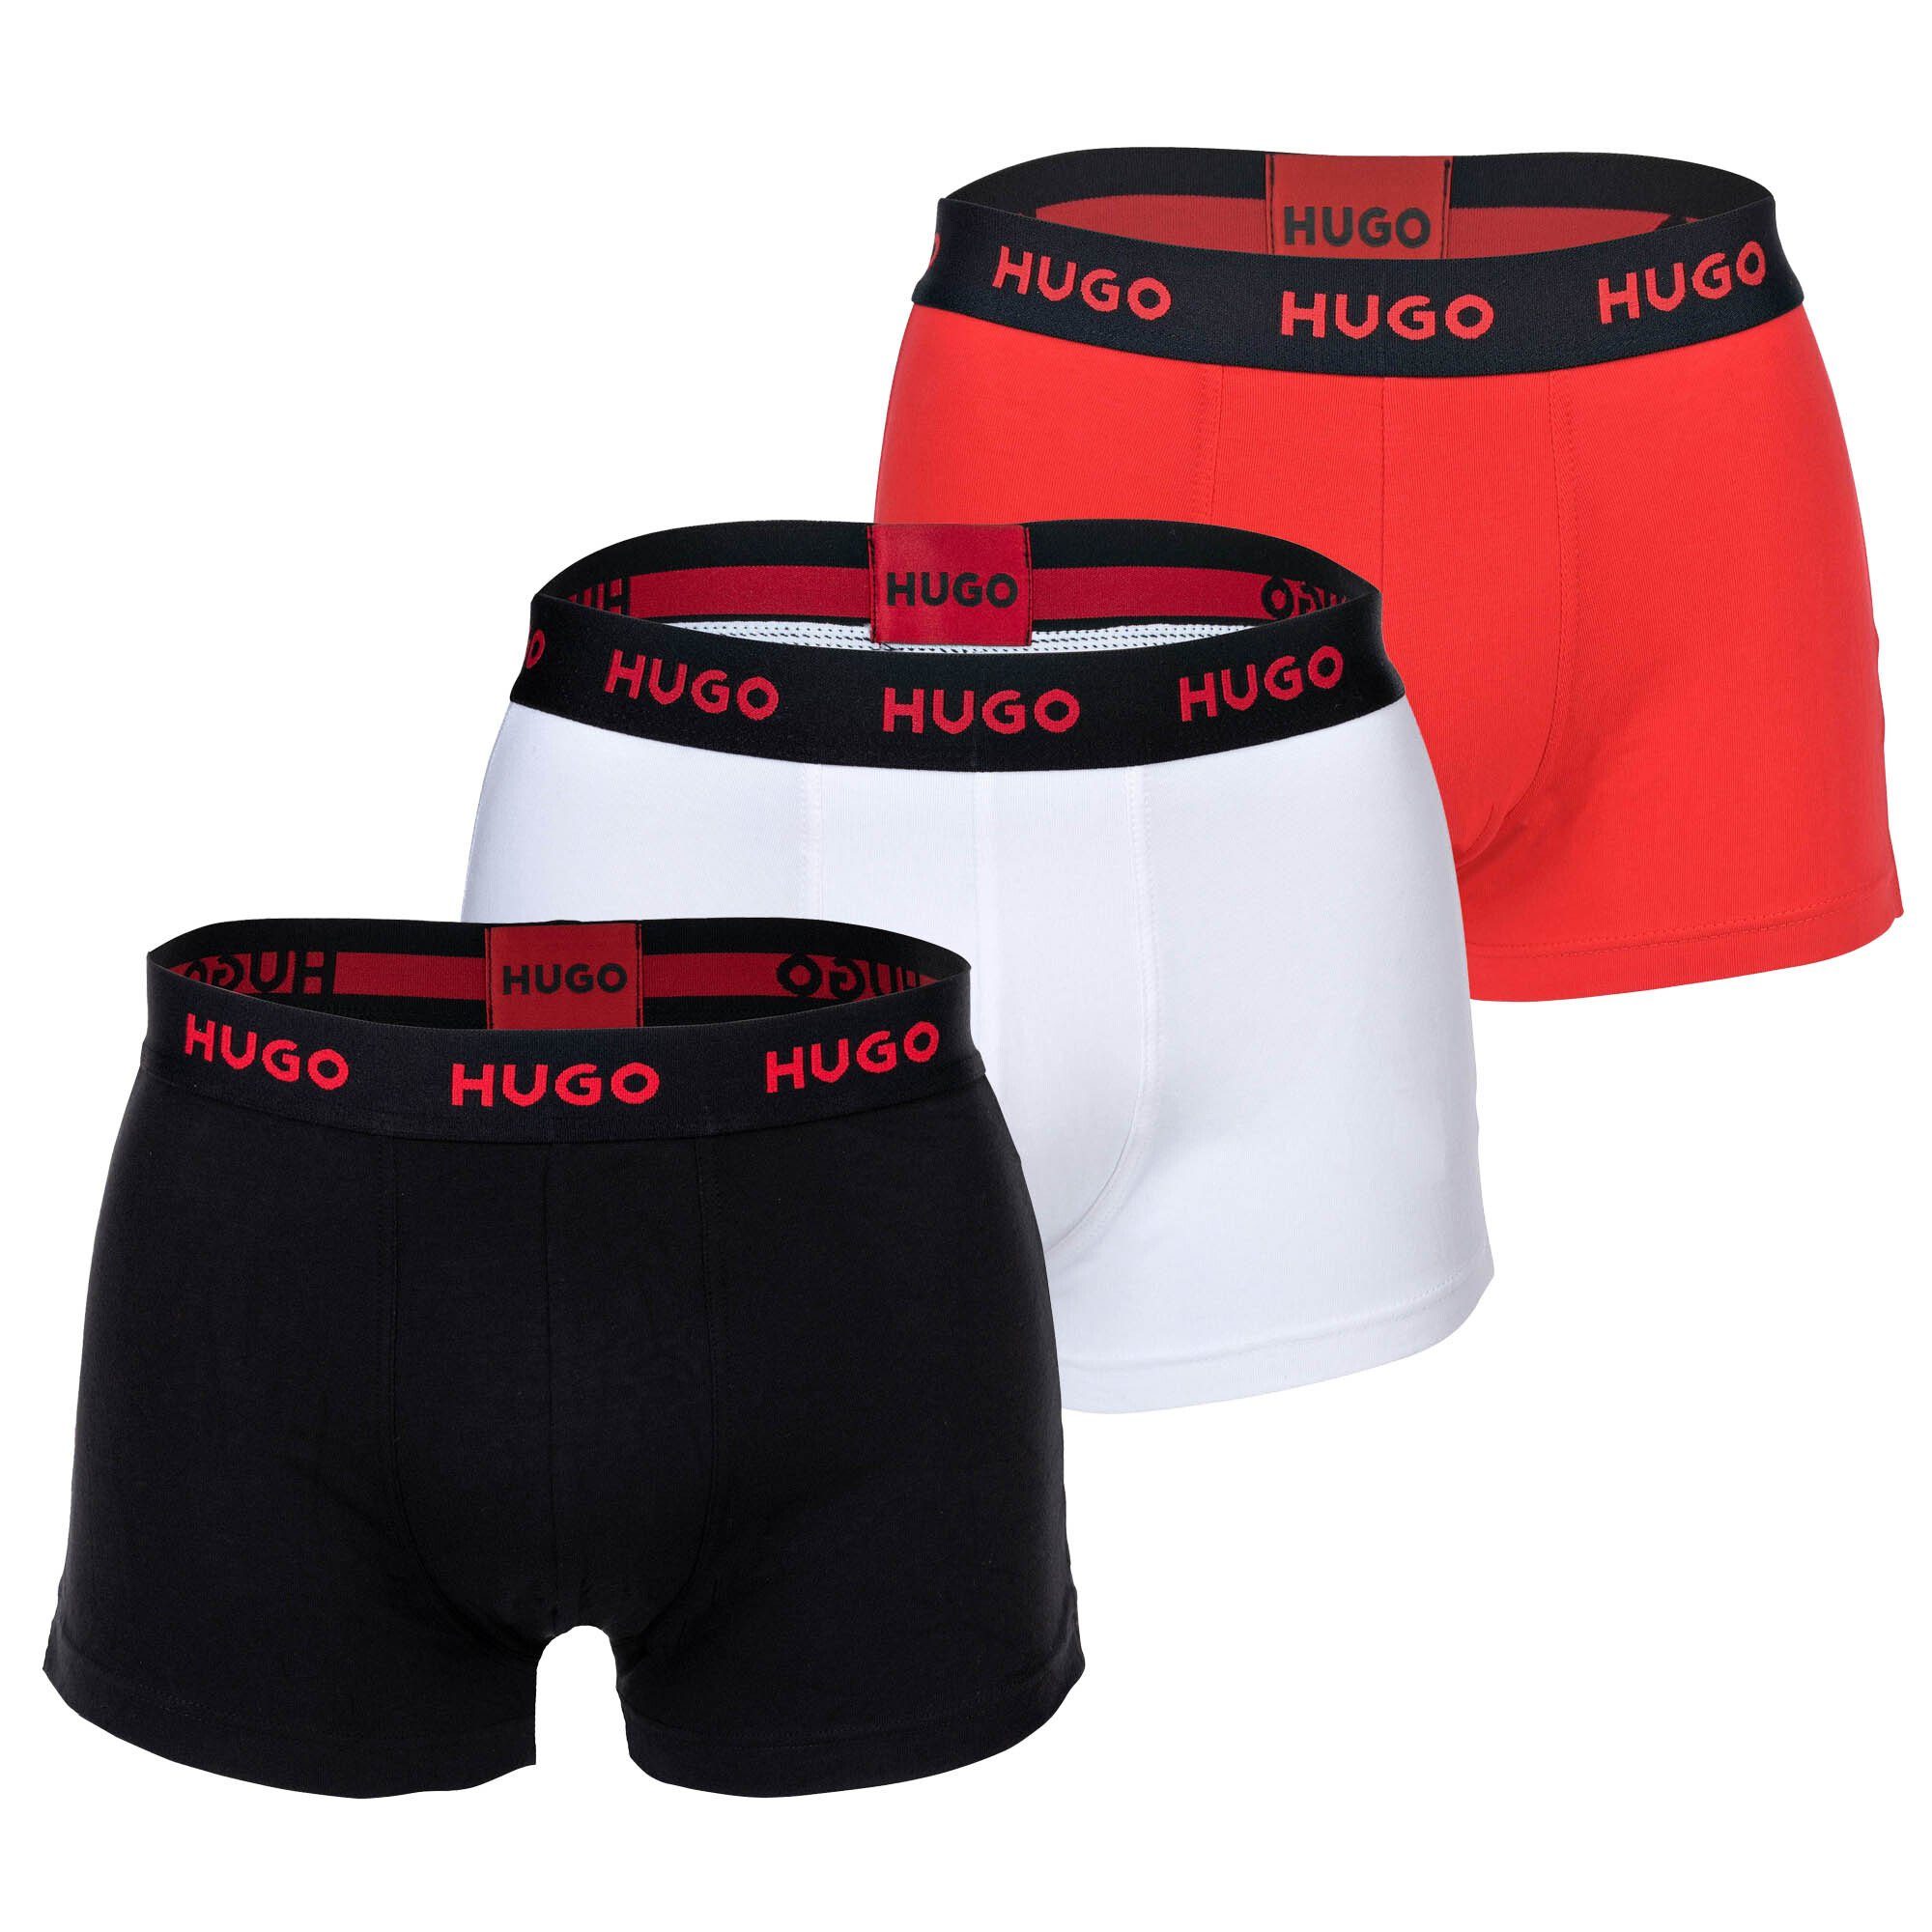 HUGO Boxer Herren Boxer Shorts, 3er Pack - Trunks Triplet Rot/Weiß/Schwarz